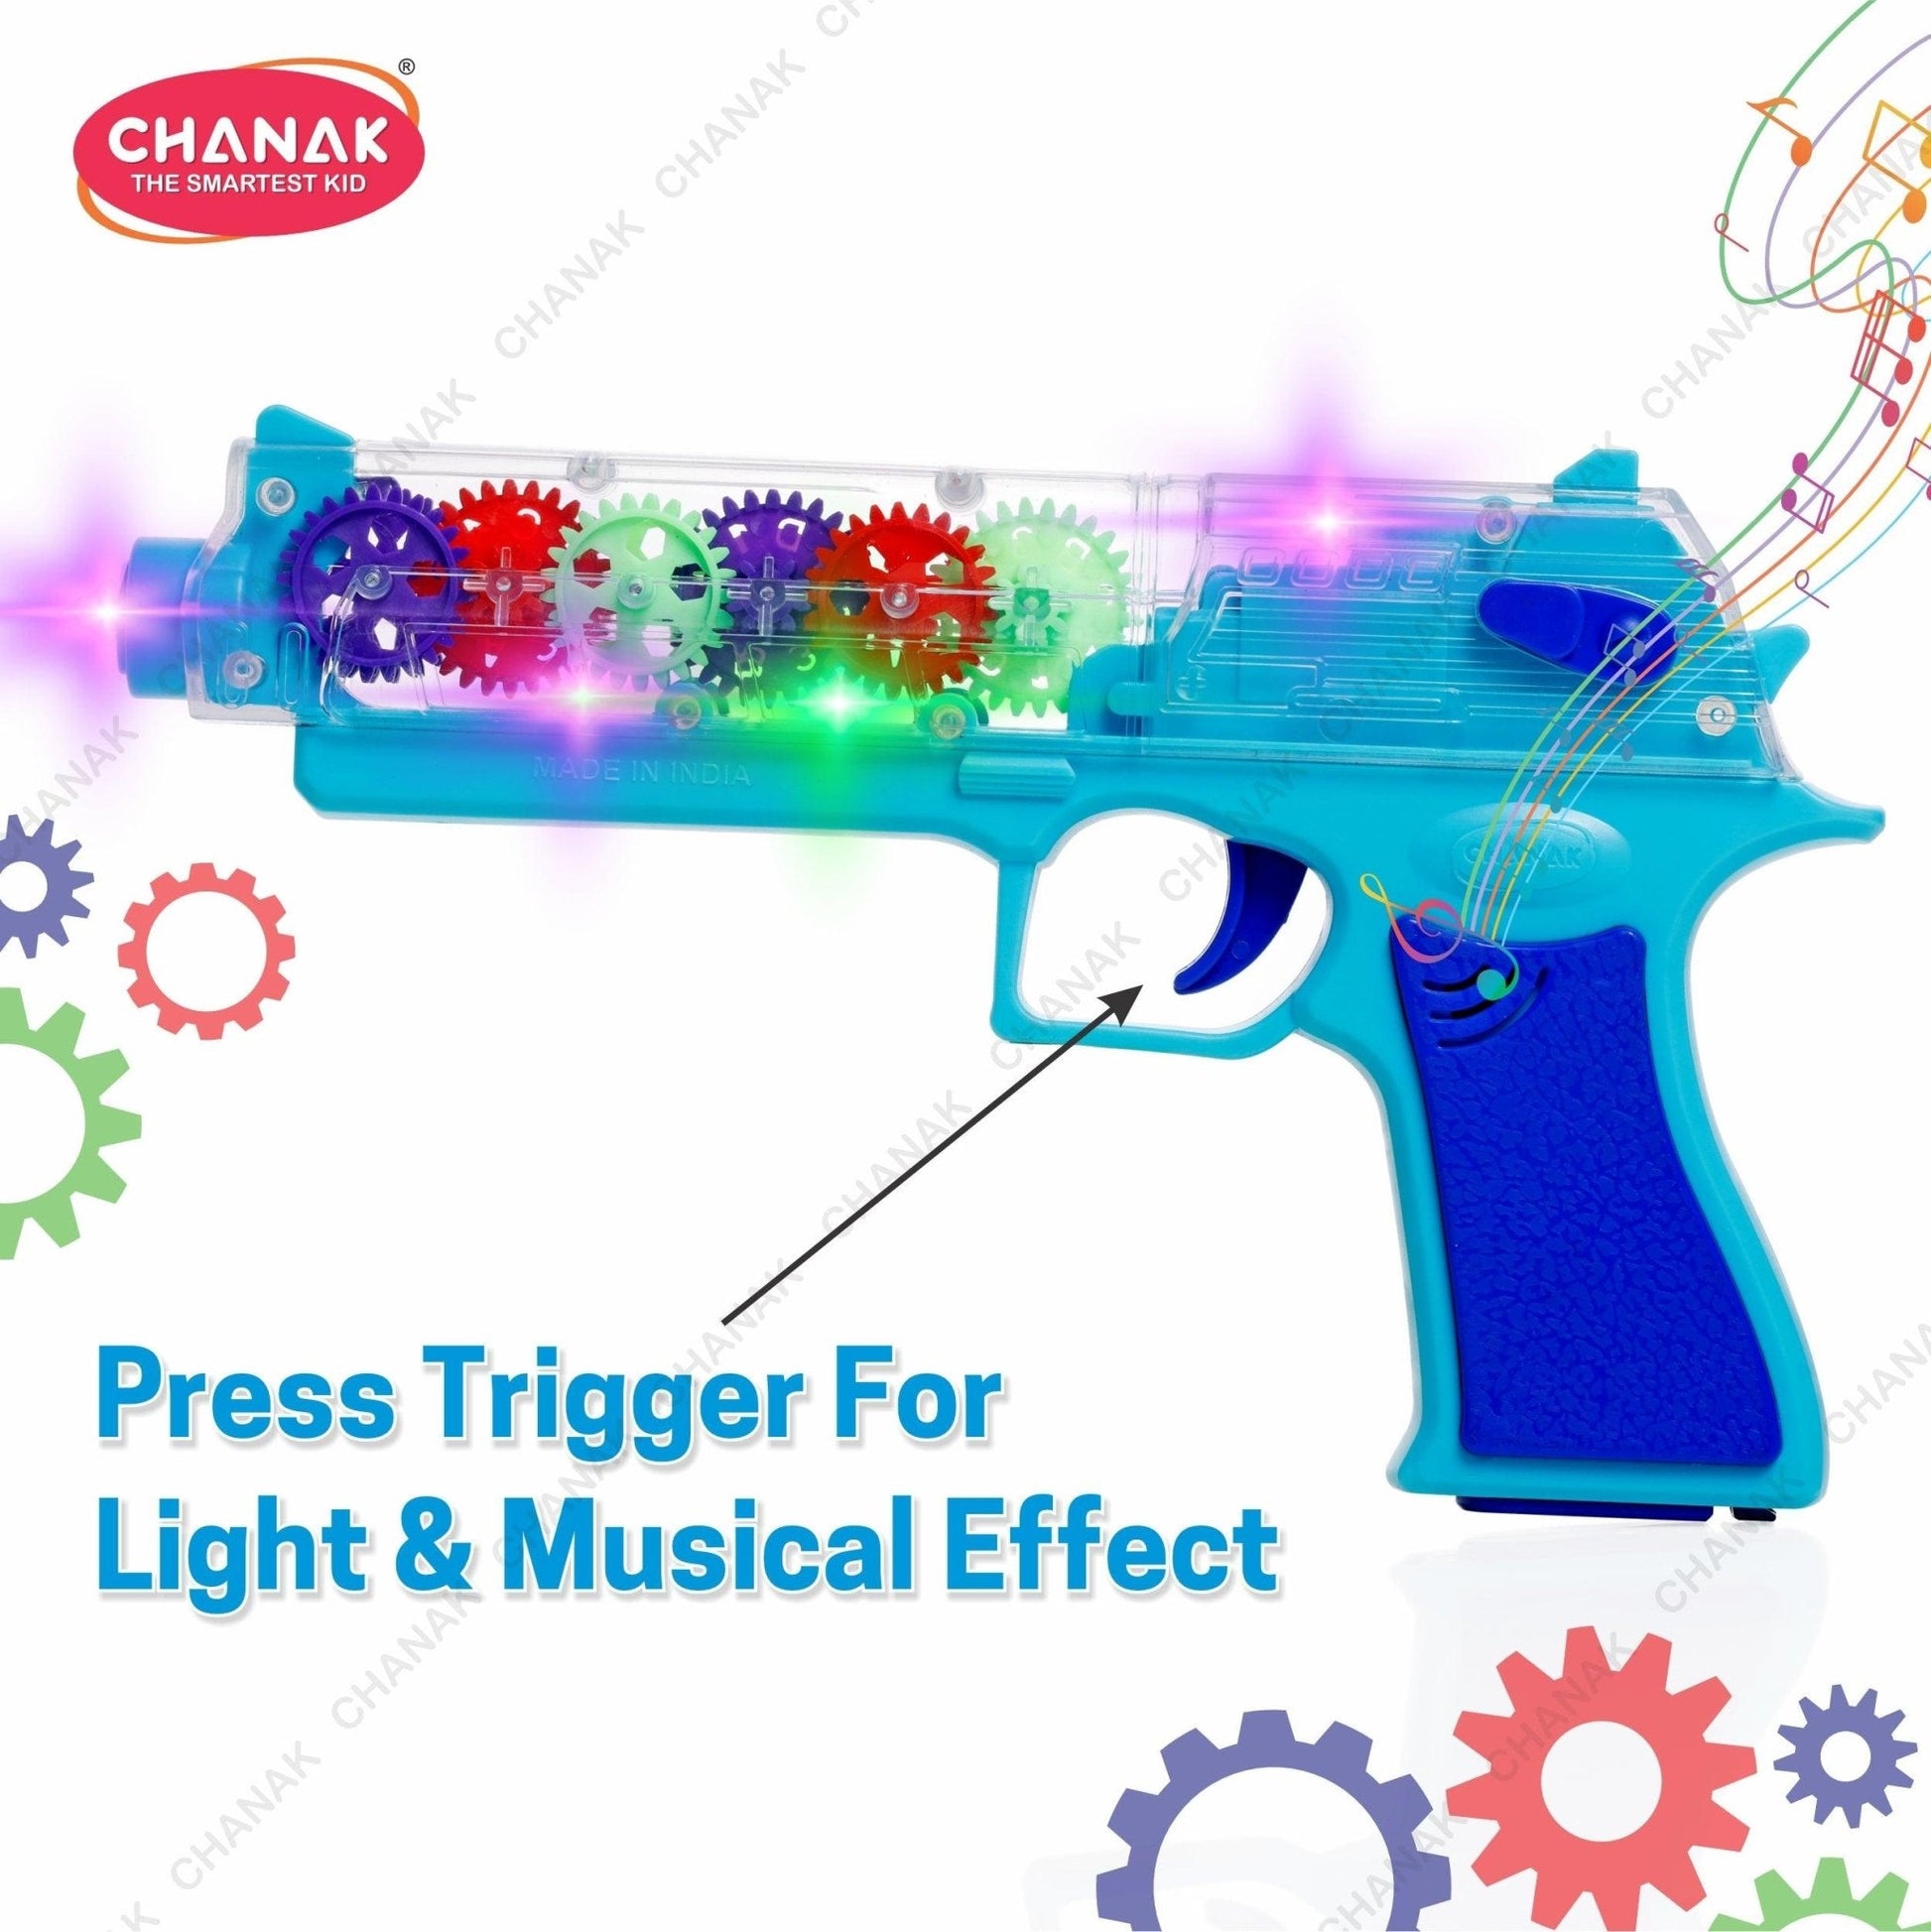 Chanak Transparent Gear Gun Toy for Kids (Blue) - chanak